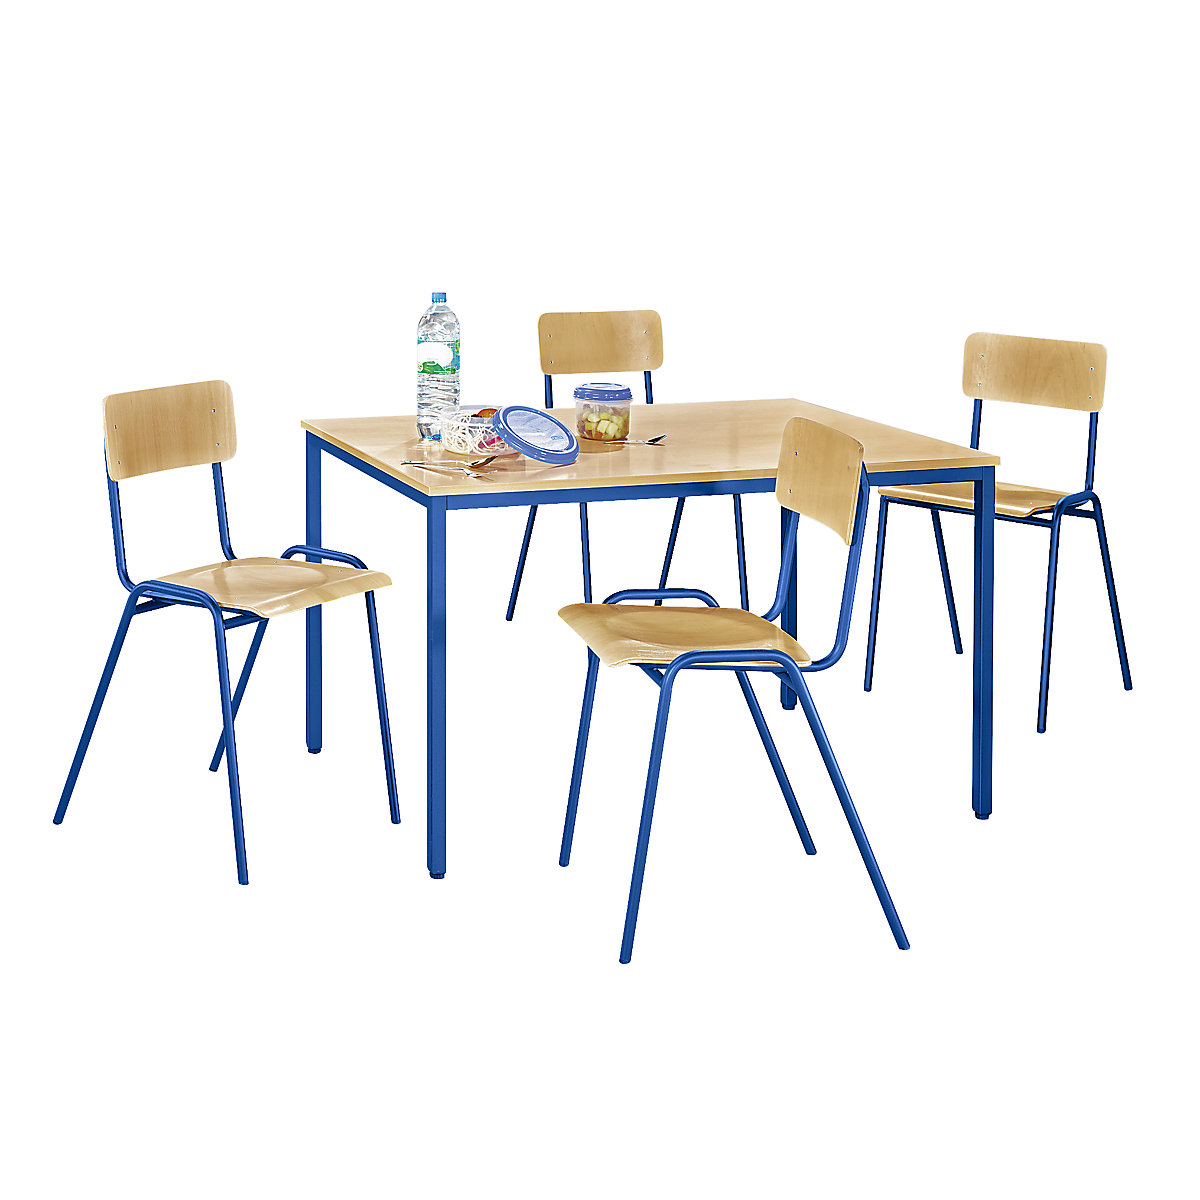 Conjunto de sillas y mesa multiusos – eurokraft basic, 1 mesa, 4 sillas, tablero de mesa en decoración de haya, armazón azul genciana-5